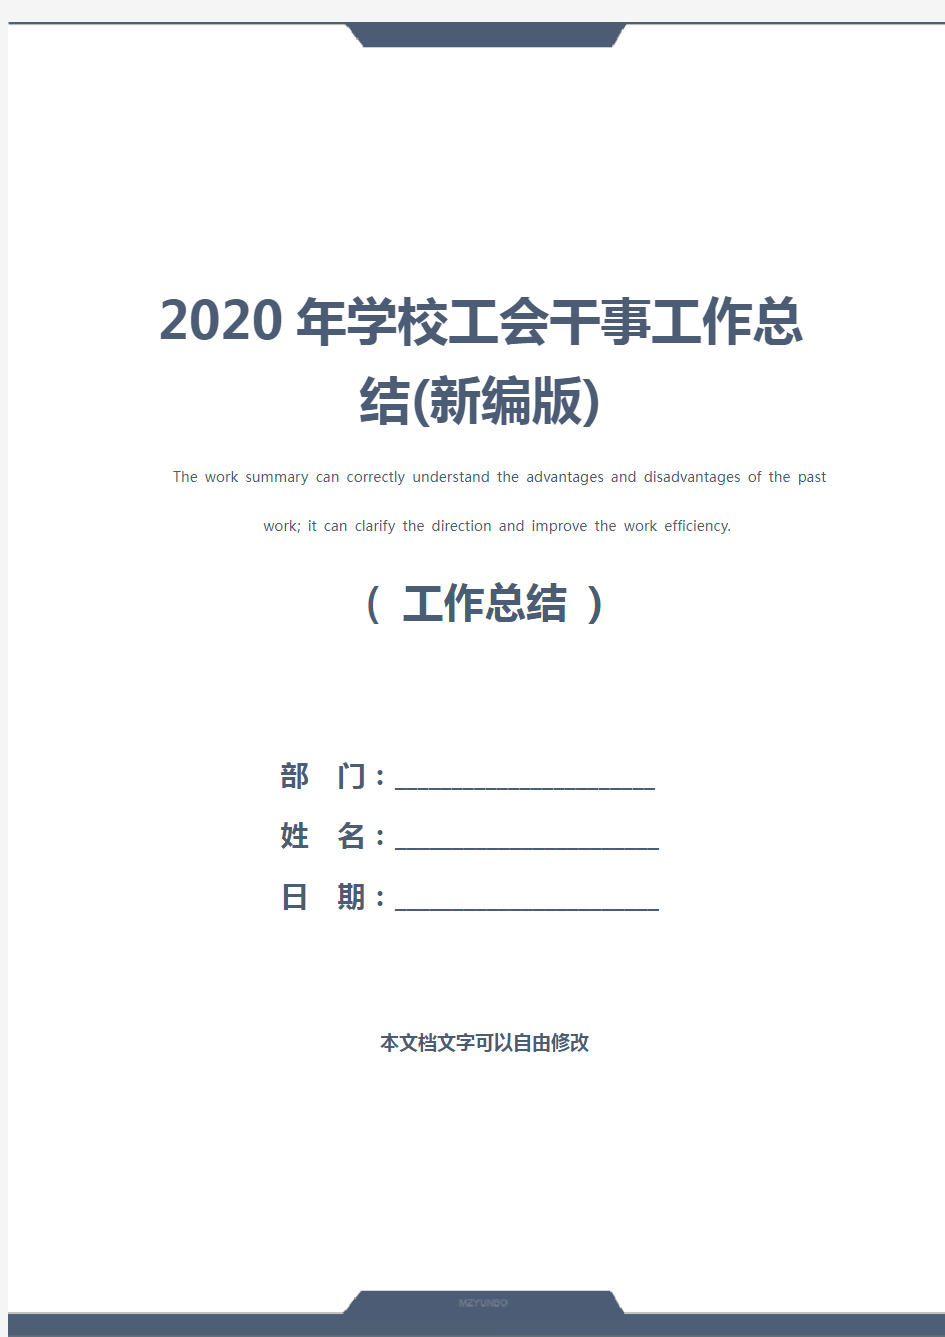 2020年学校工会干事工作总结(新编版)